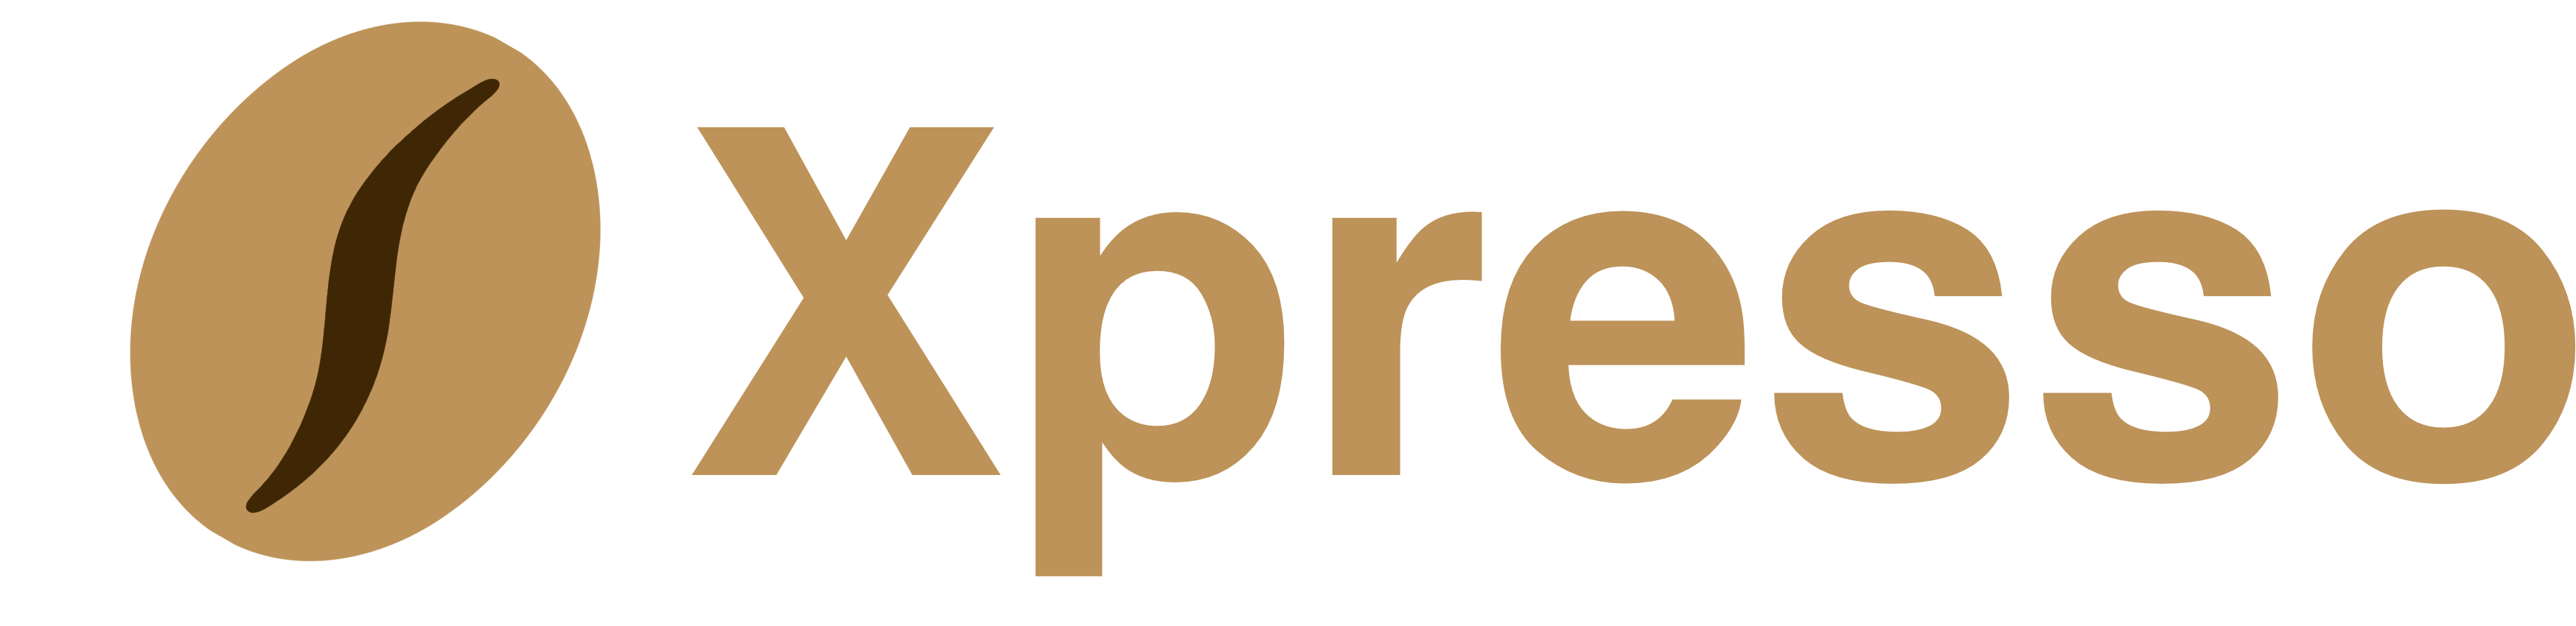 Xpresso